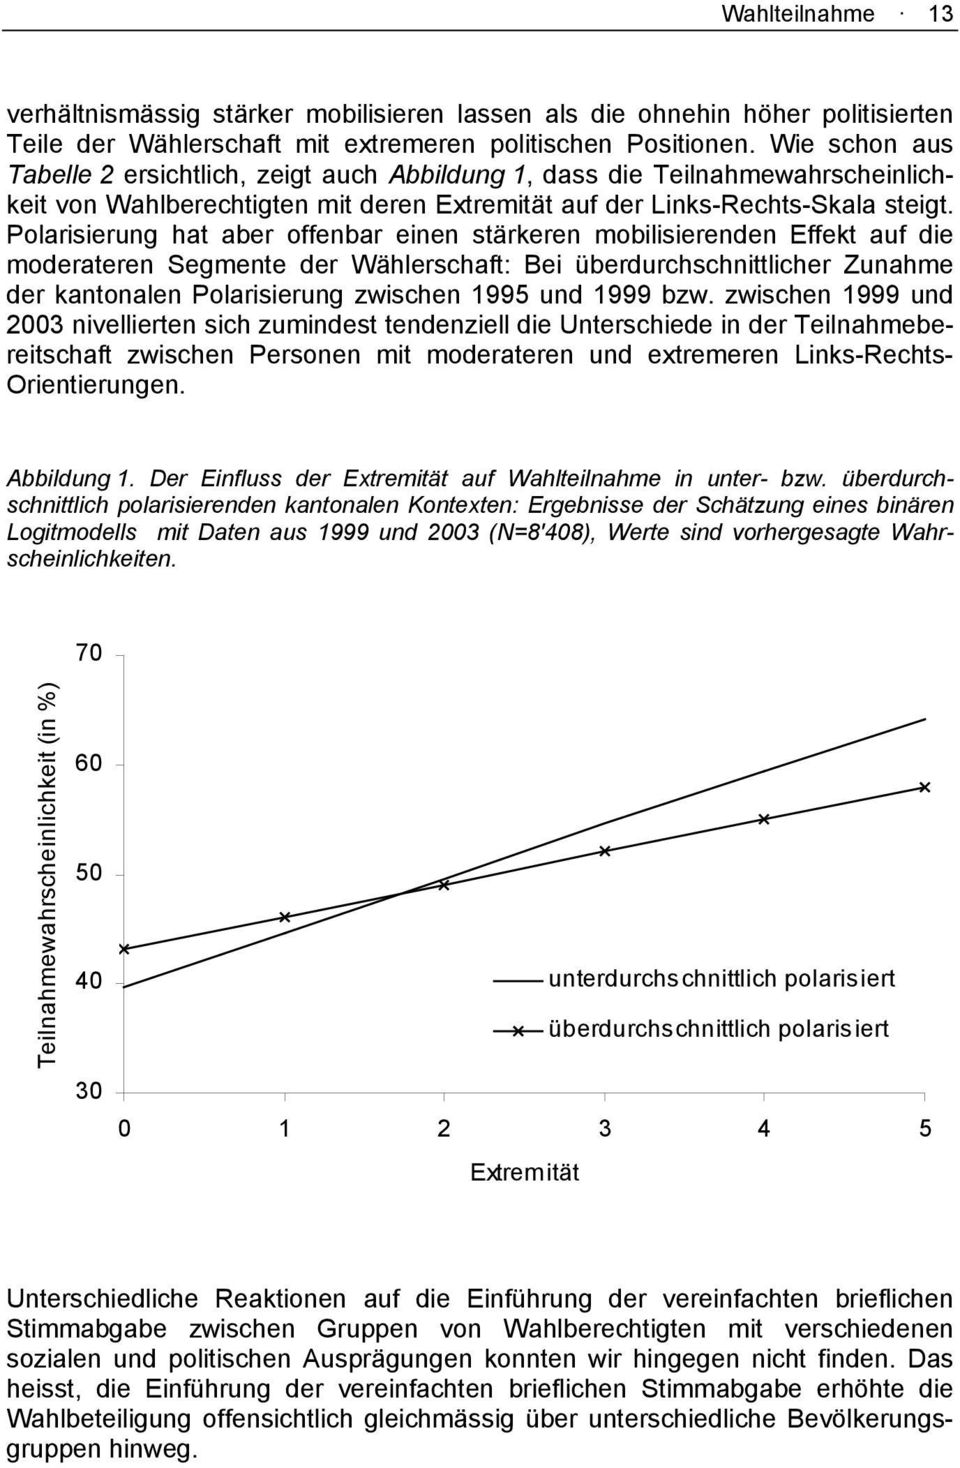 Polarisierung hat aber offenbar einen stärkeren mobilisierenden Effekt auf die moderateren Segmente der Wählerschaft: Bei überdurchschnittlicher Zunahme der kantonalen Polarisierung zwischen 1995 und